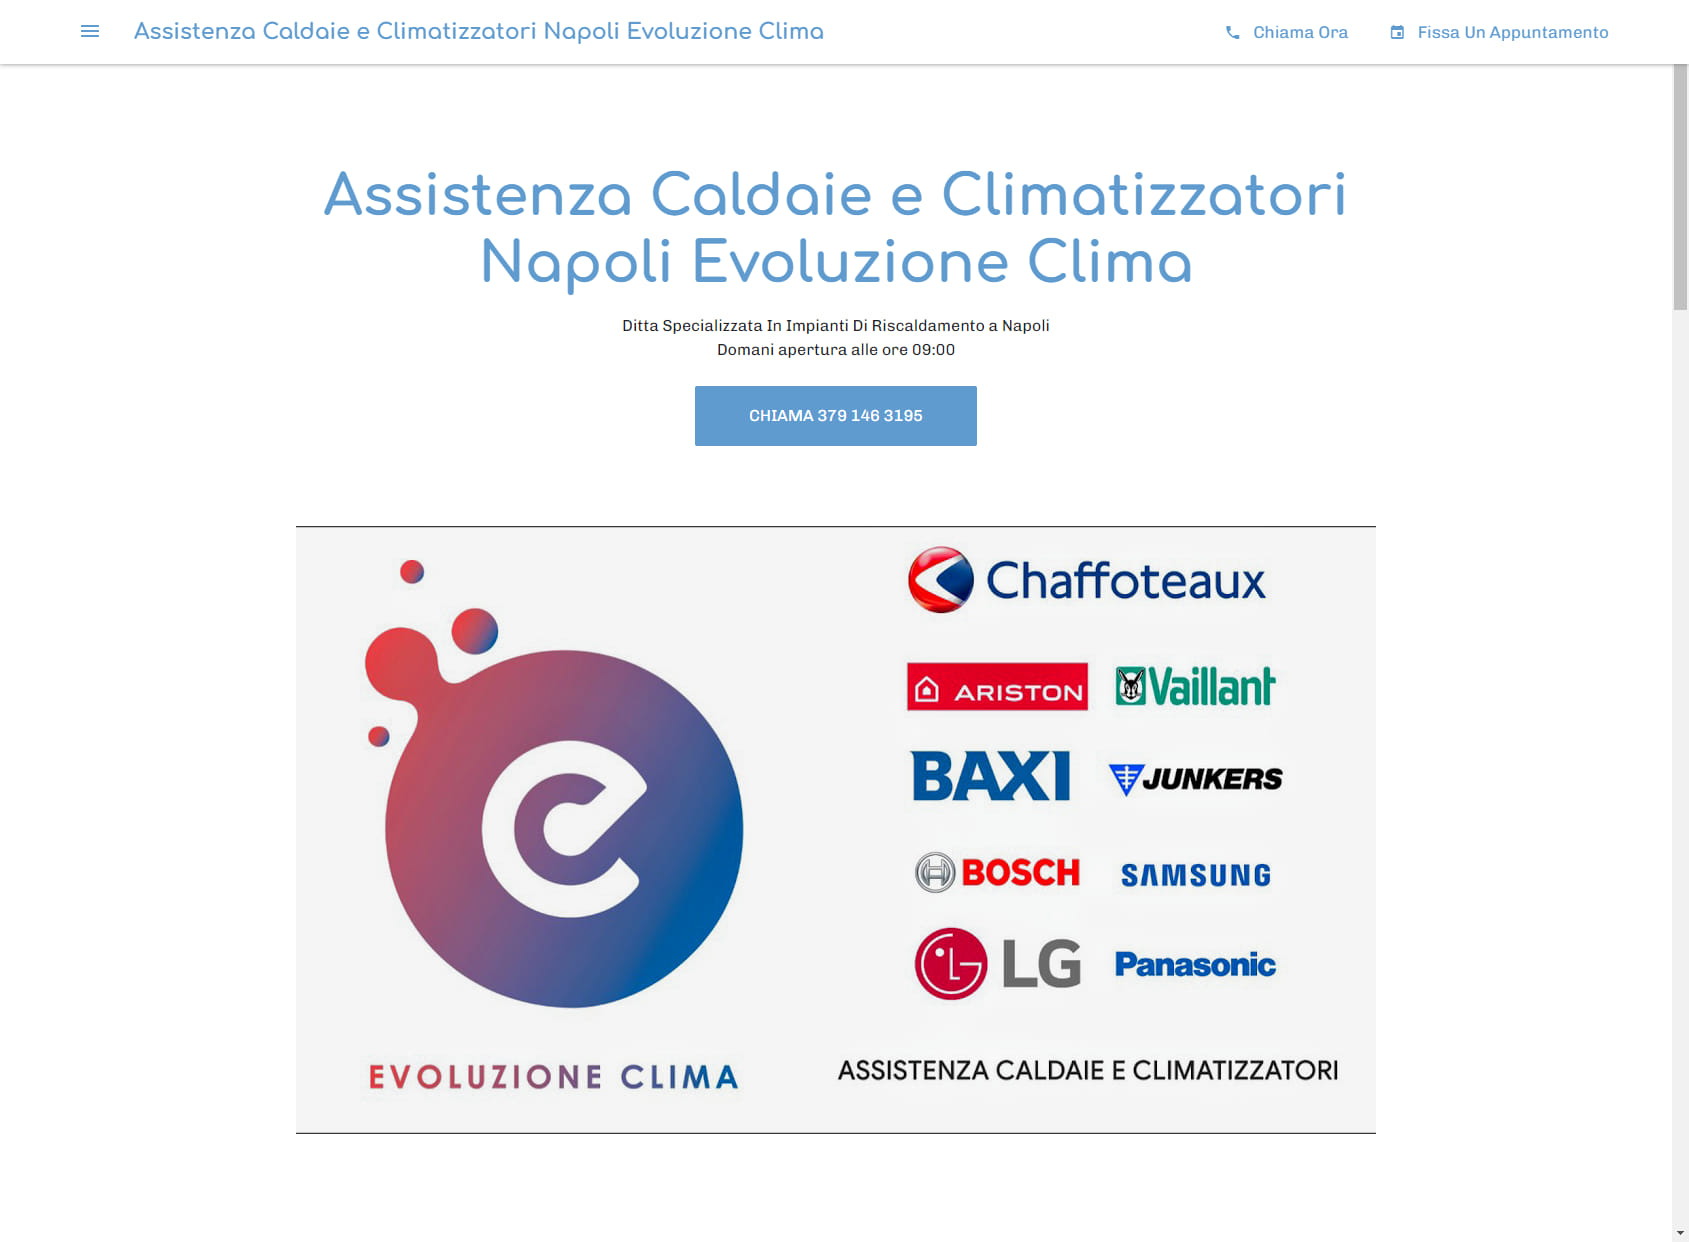 Assistenza Caldaie e Climatizzatori Napoli Evoluzione Clima